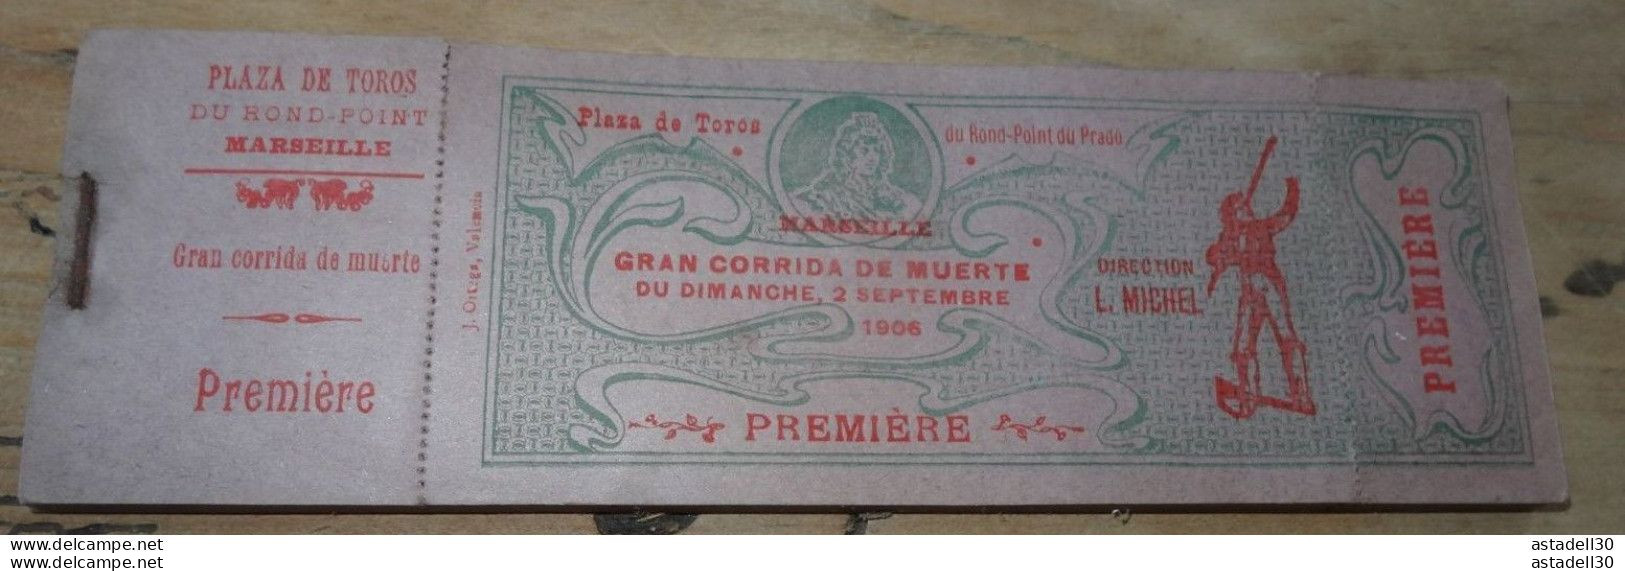 Ticket Entrée GRAN CORRIDA DE MUERTE, 02/09/1906, Plaza De Toros MARSEILLE ............. TIC-COR1..... Caisse9 - Tickets - Vouchers